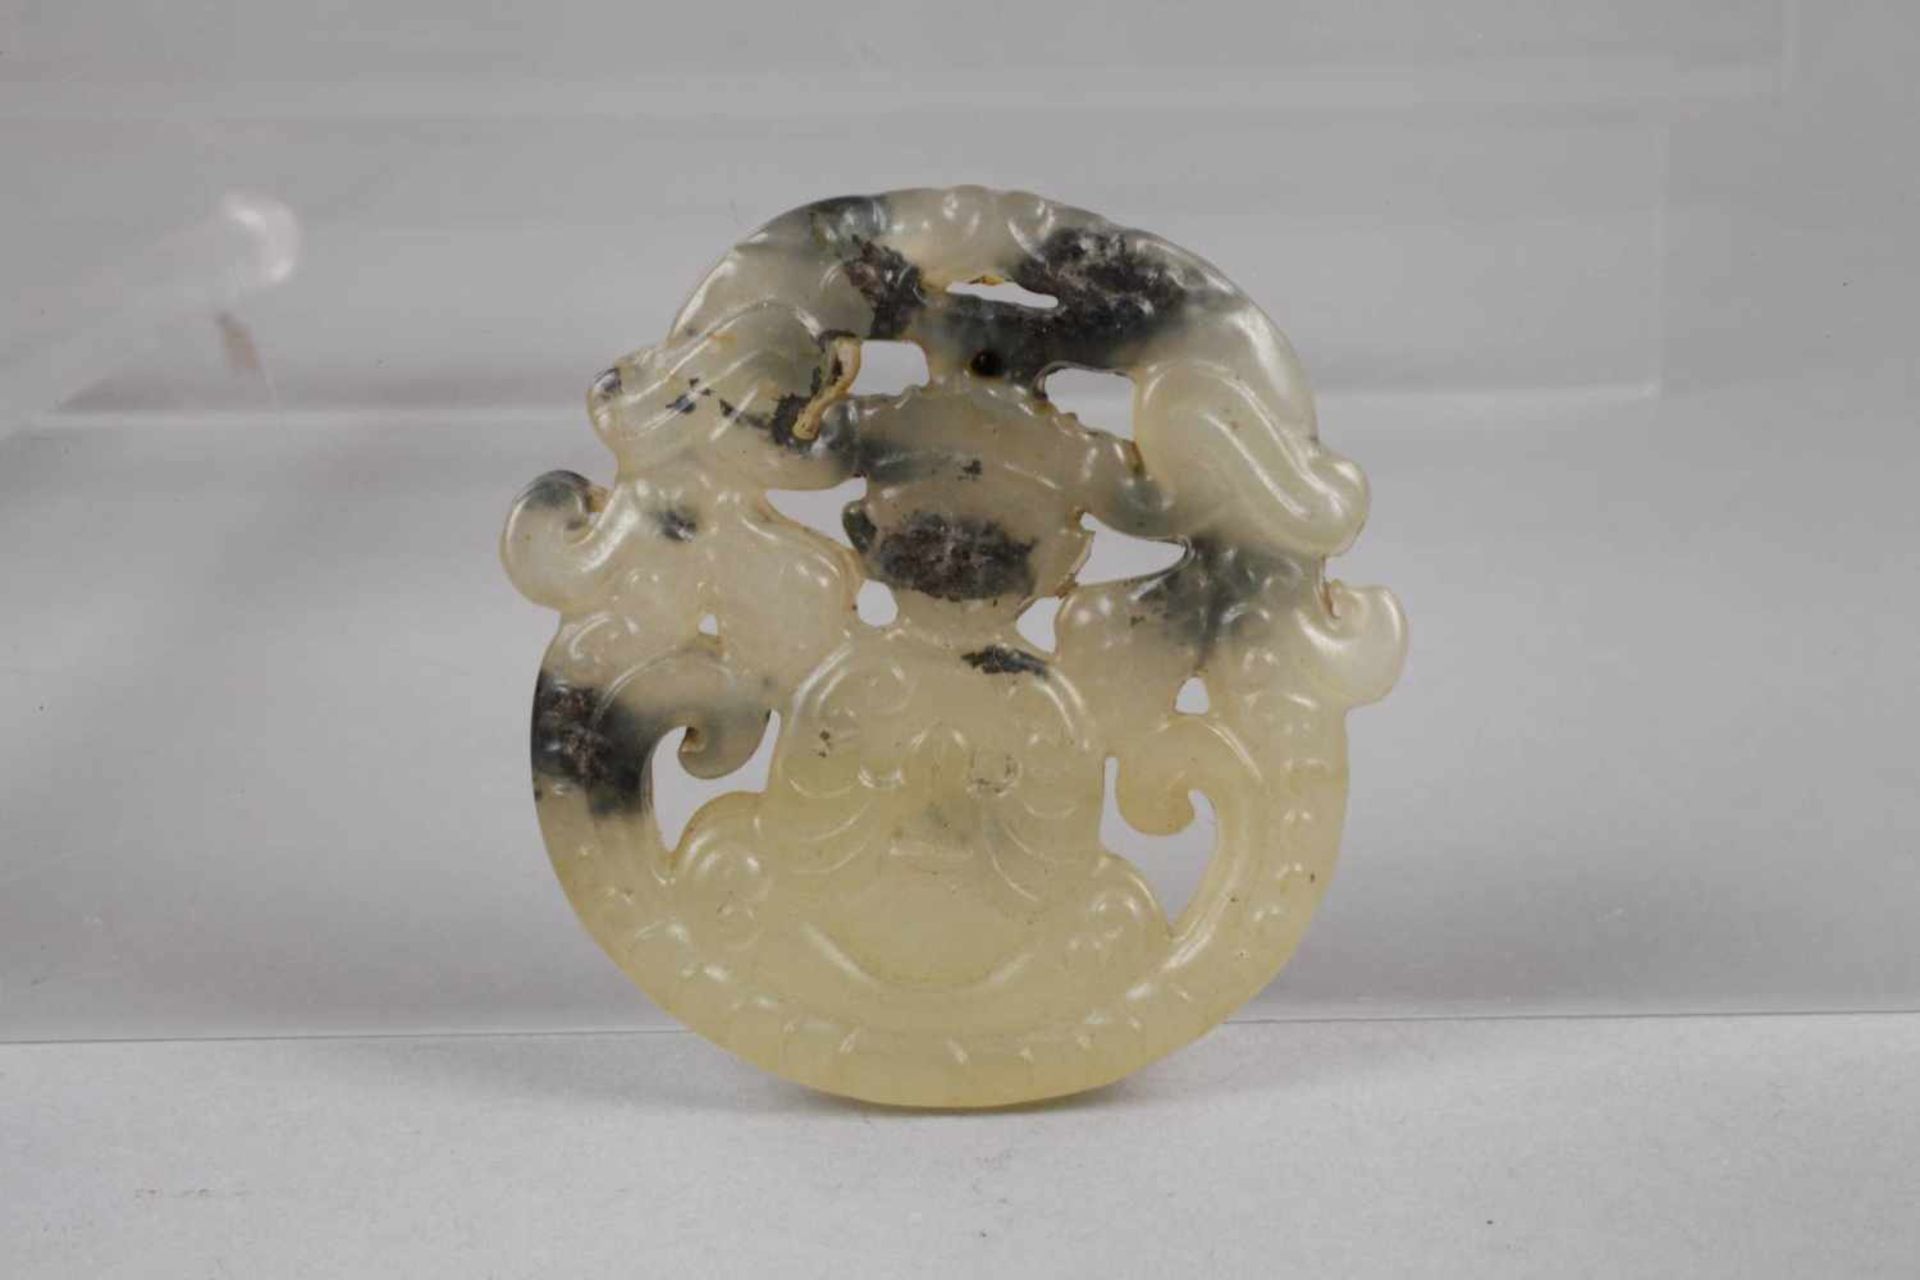 Vier JadeschnitzereienChina, 20. Jh., verschiedenfarbige Nephrite/Jadeite, aufwendig durchbrochen - Bild 4 aus 5